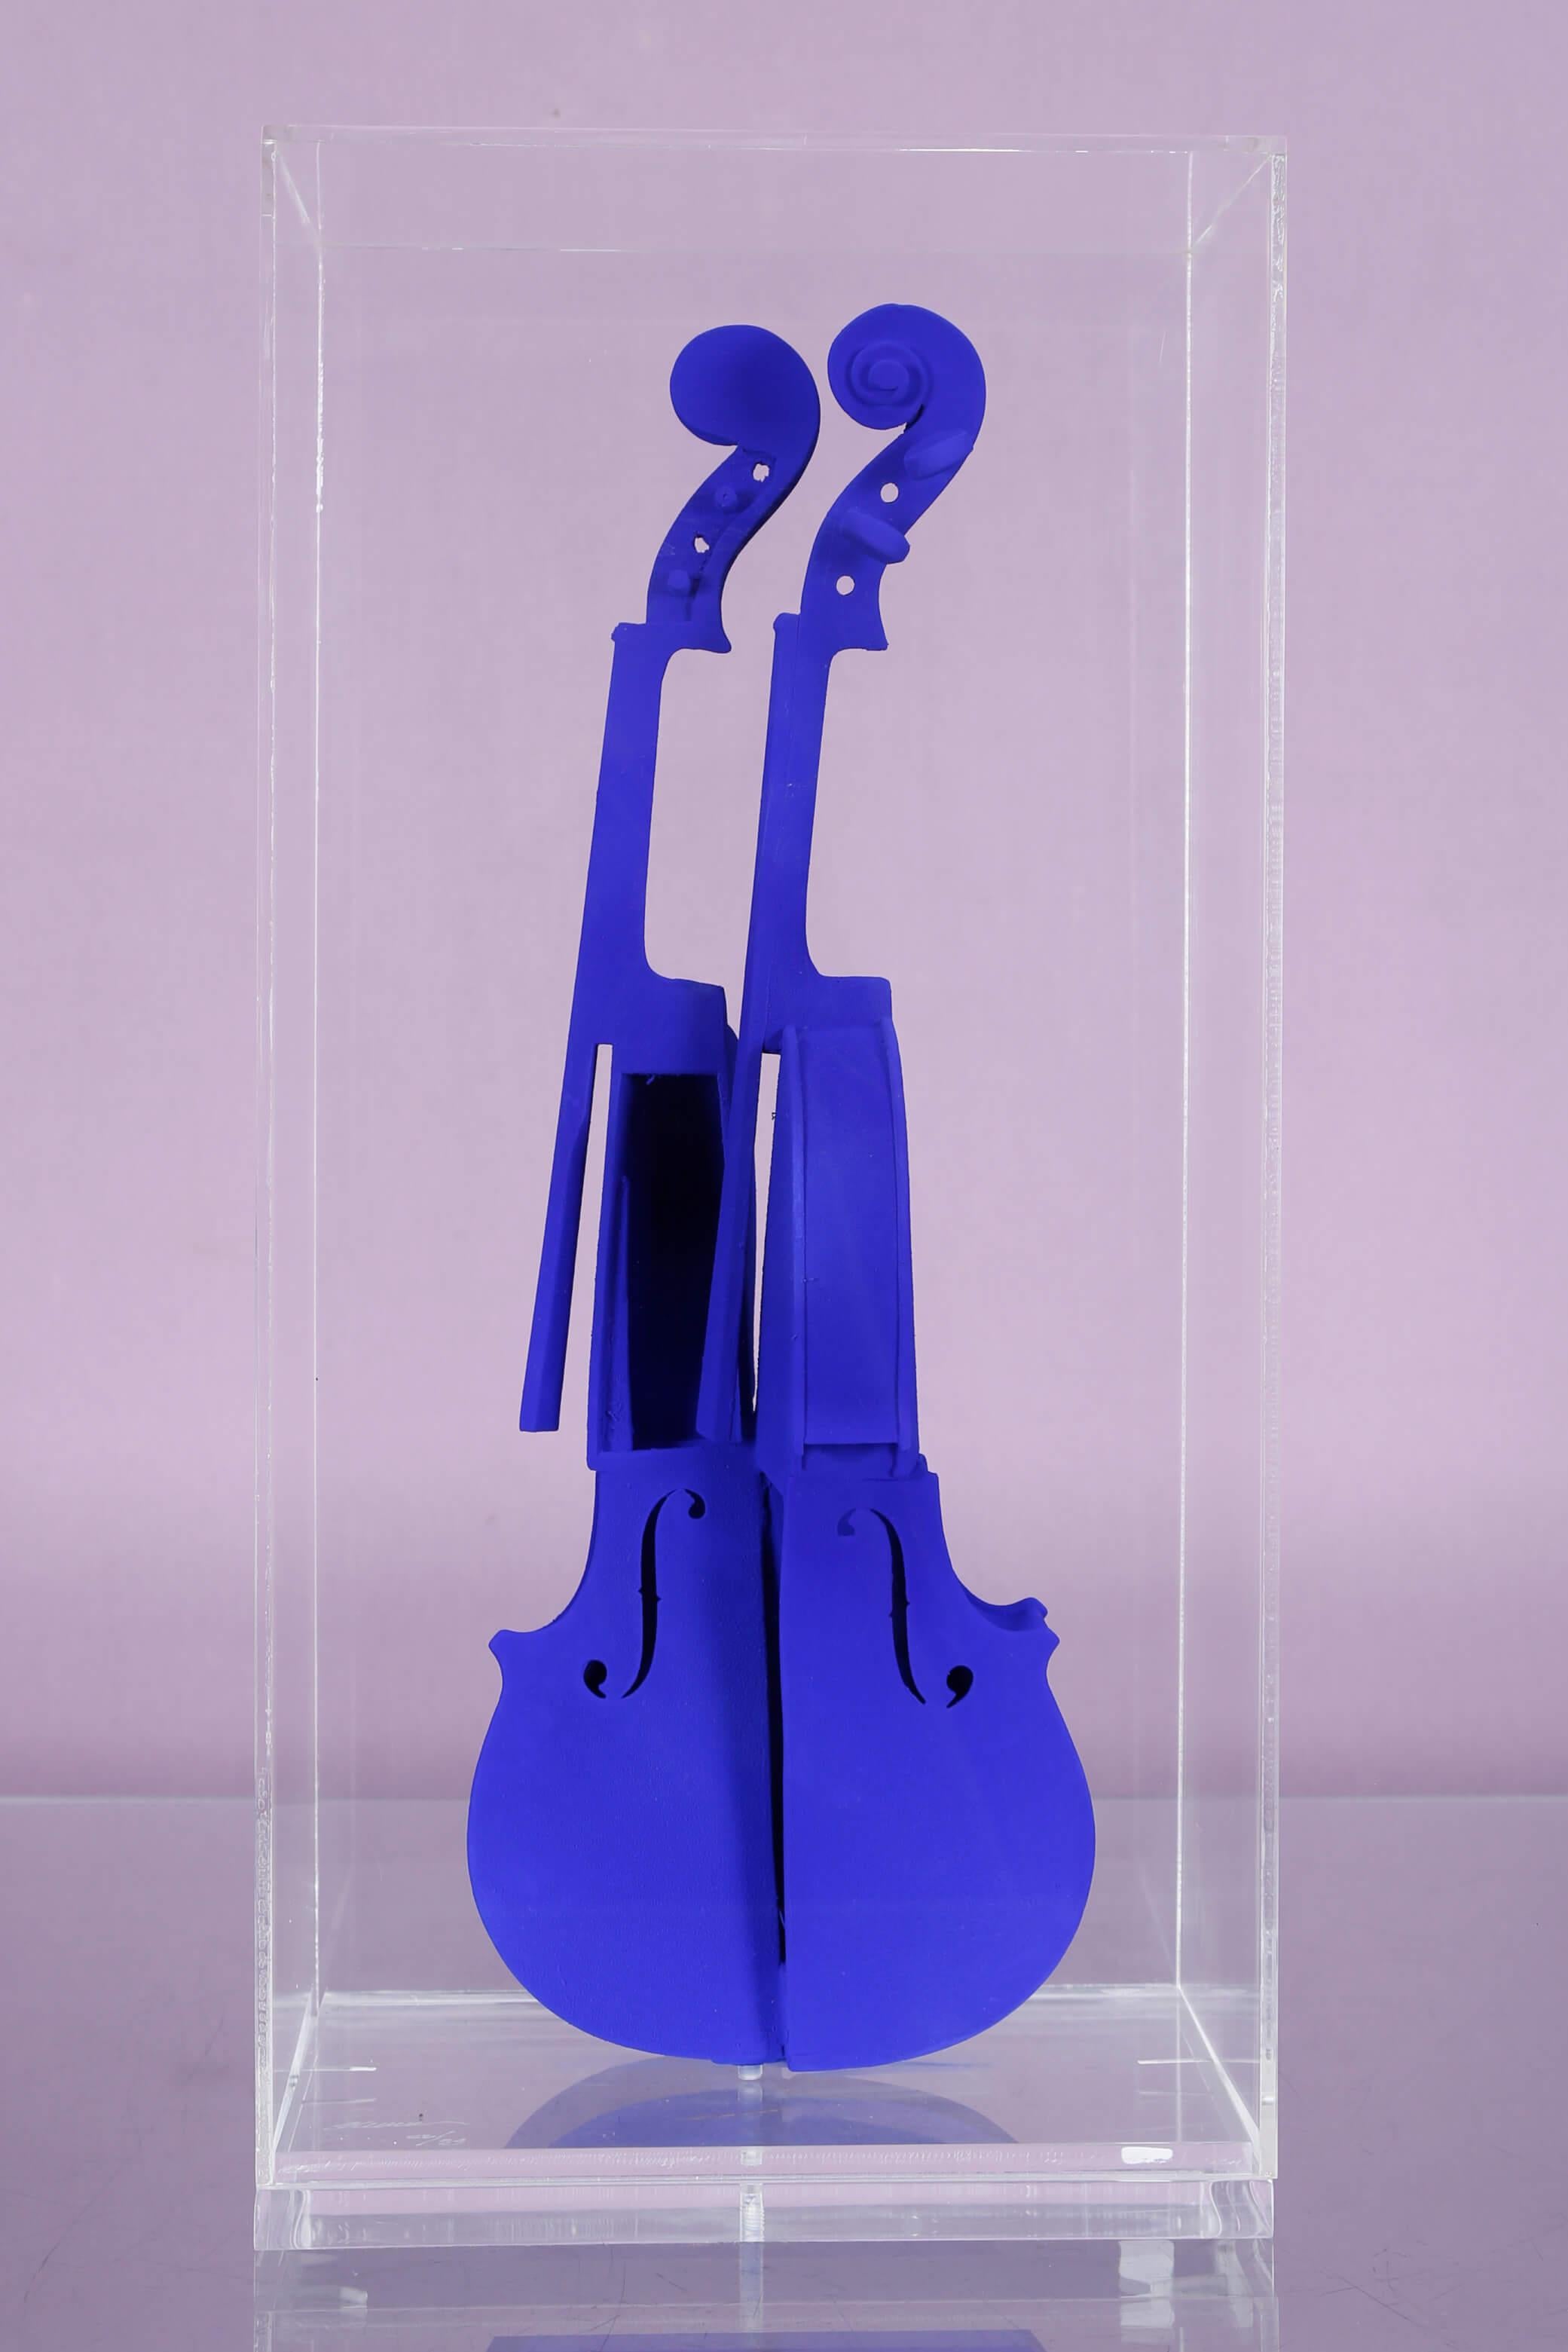 Arman 
1996
Coupe de violon, bois et pigment bleu dans une boîte en plexiglas
Edition de 90 de I/XC à XC/XC + 9 AP de EA I/IX à EA IX/IX
Signé et numéroté dans le plexiglas
Enregistré à la Fondation A.R.M.A.N à Genève sous NR 5400
Enregistré au